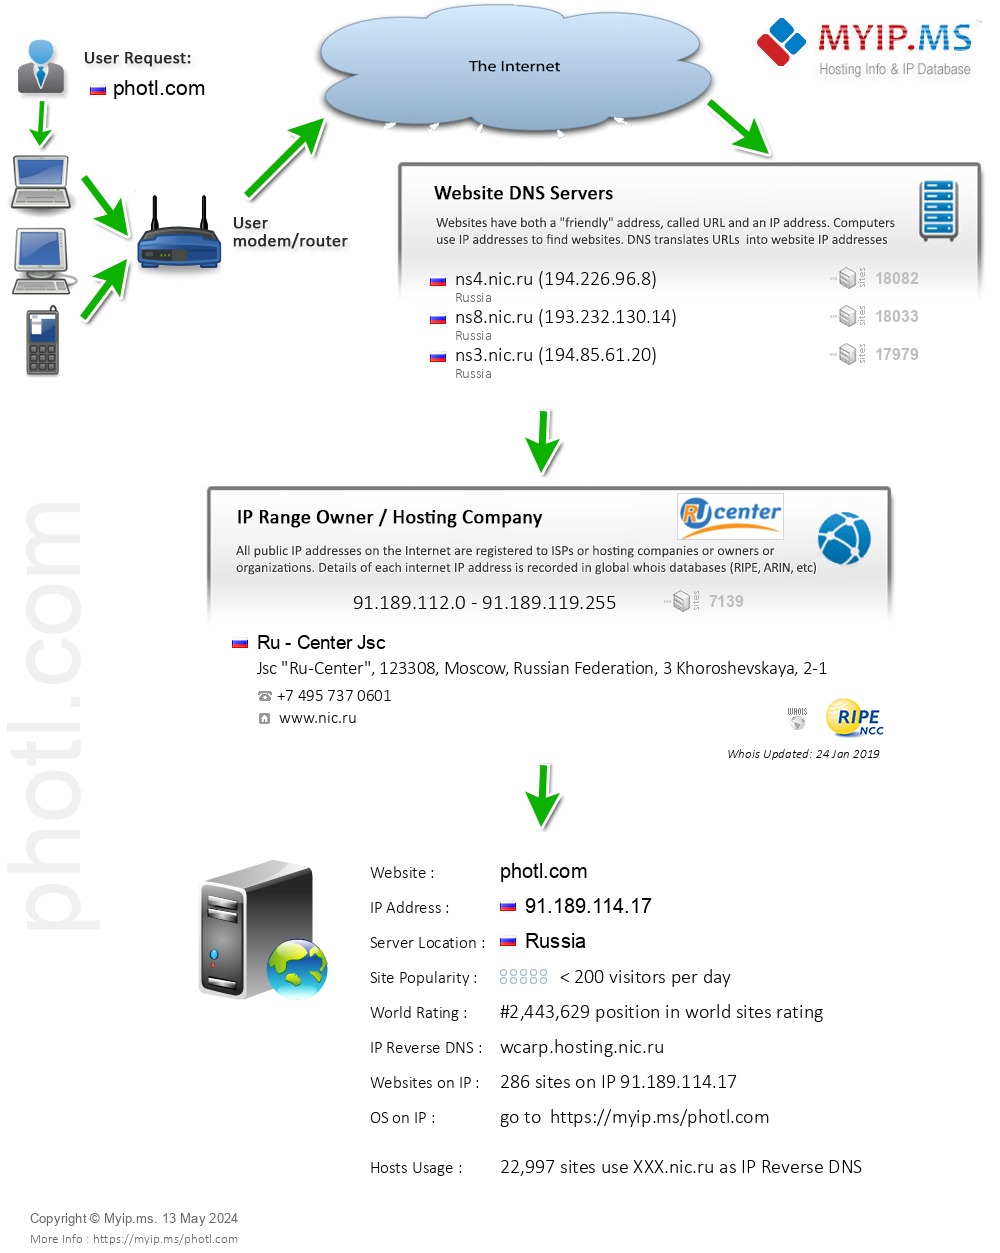 Photl.com - Website Hosting Visual IP Diagram